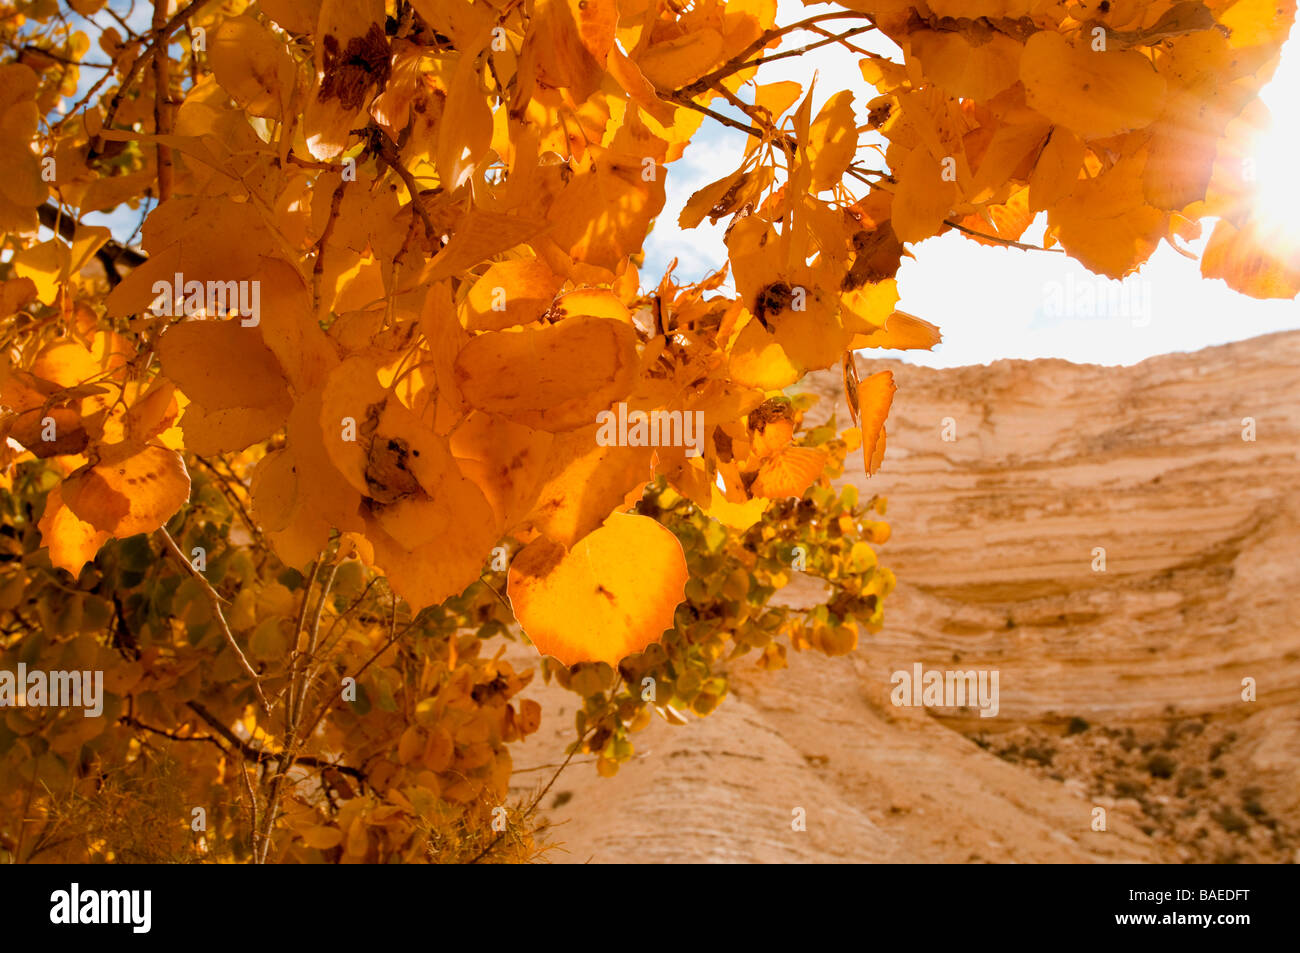 Israels Negev Wüste einen einsamen Laubbaum im Herbst Farben Stockfoto